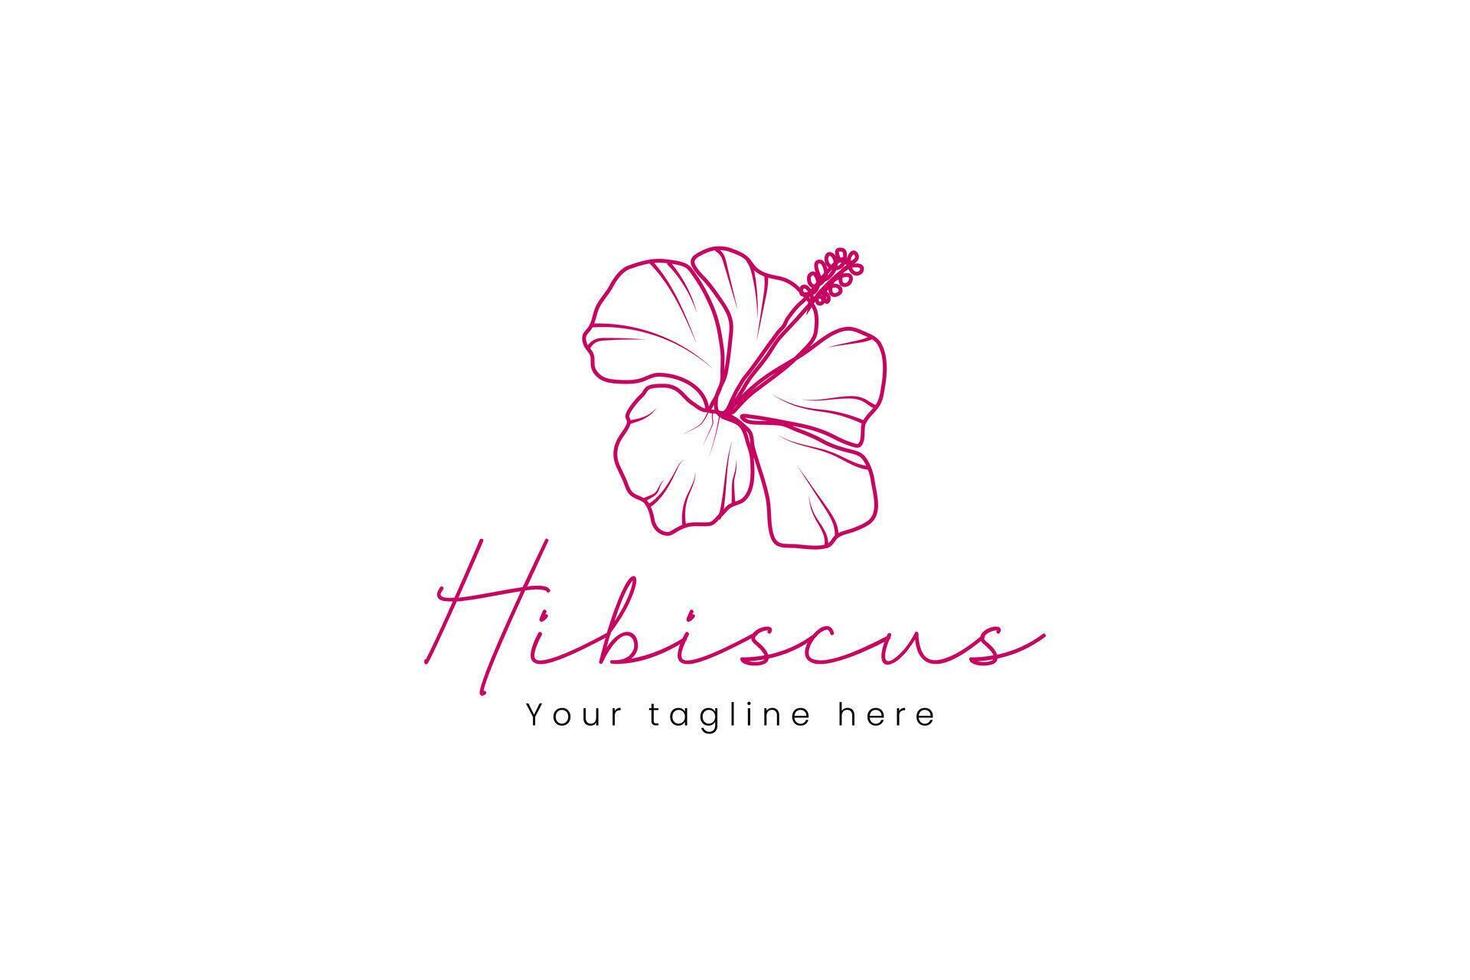 hibiscus logo vector icoon illustratie